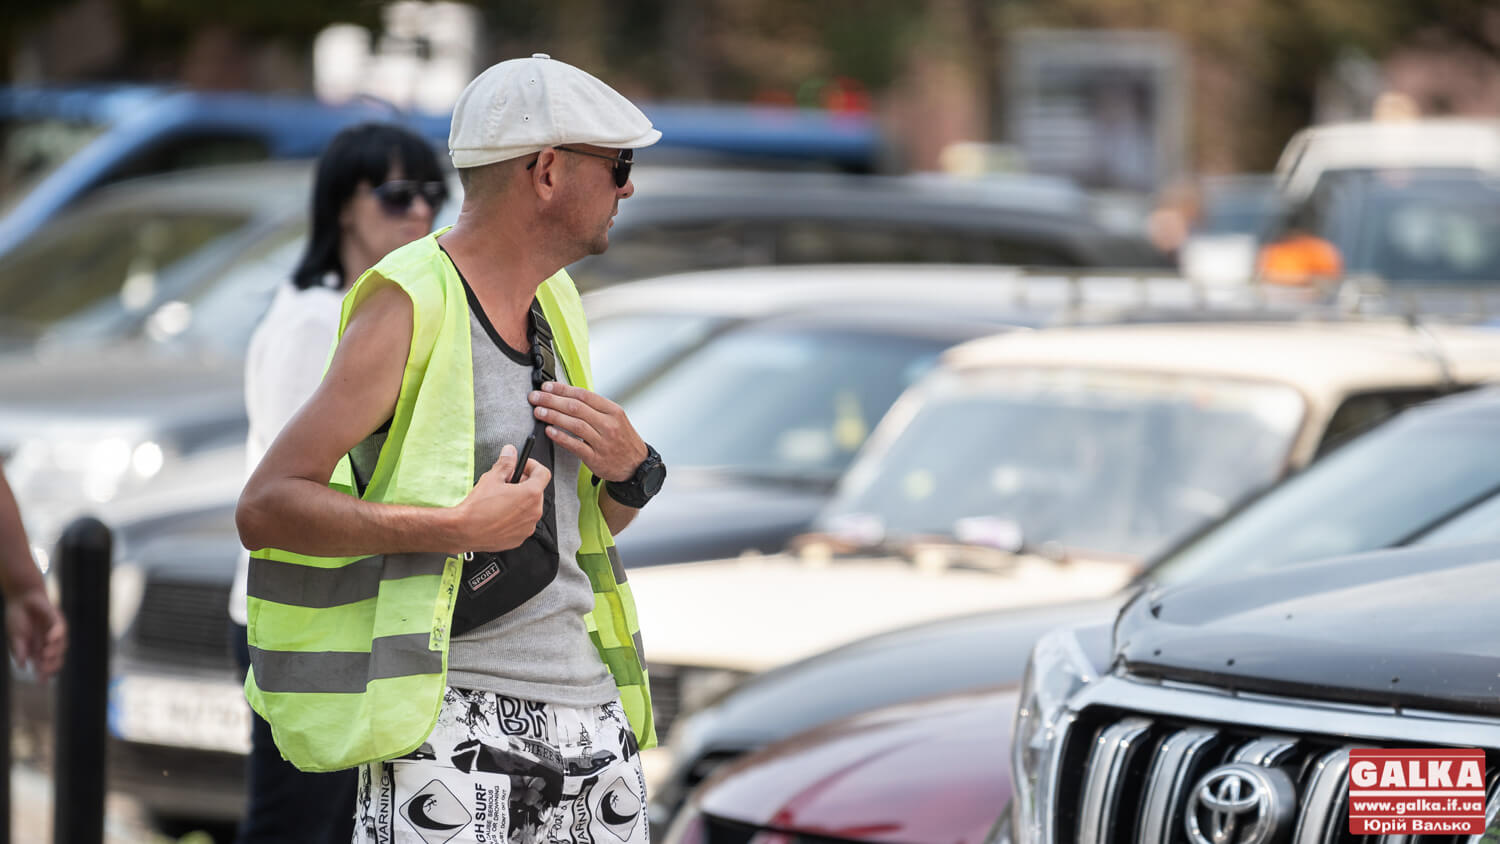 КП “Сервіс паркування” отримало за підсумками року збиток в майже 5 млн грн, – депутат міськради